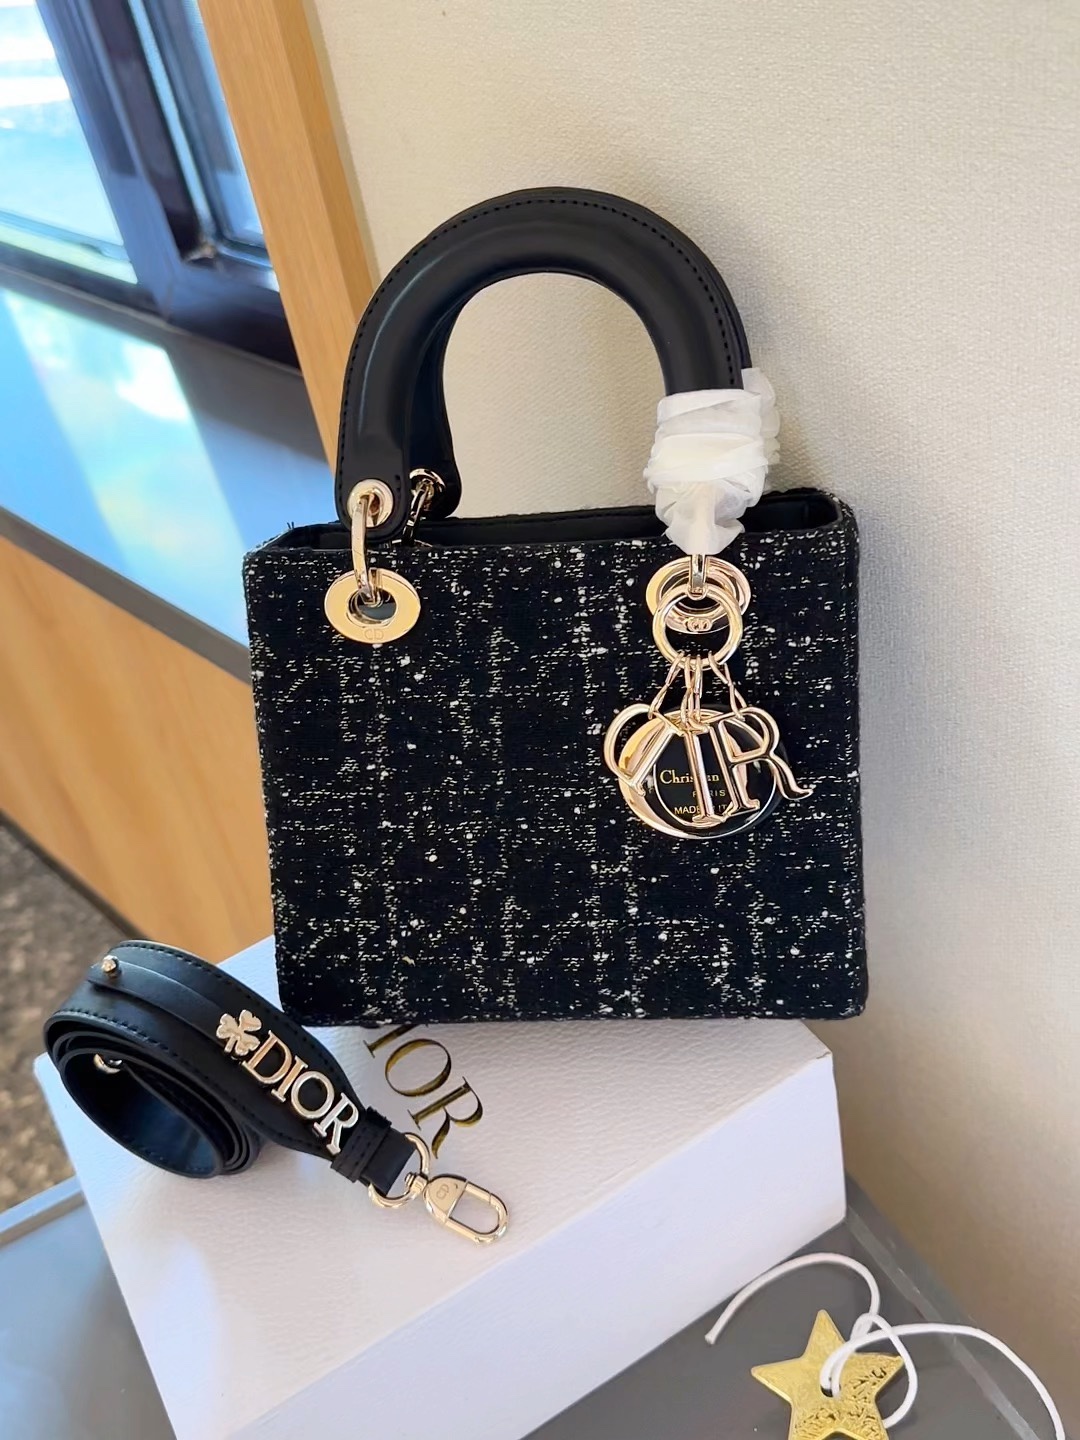 Dior Lady Handbags Crossbody & Shoulder Bags